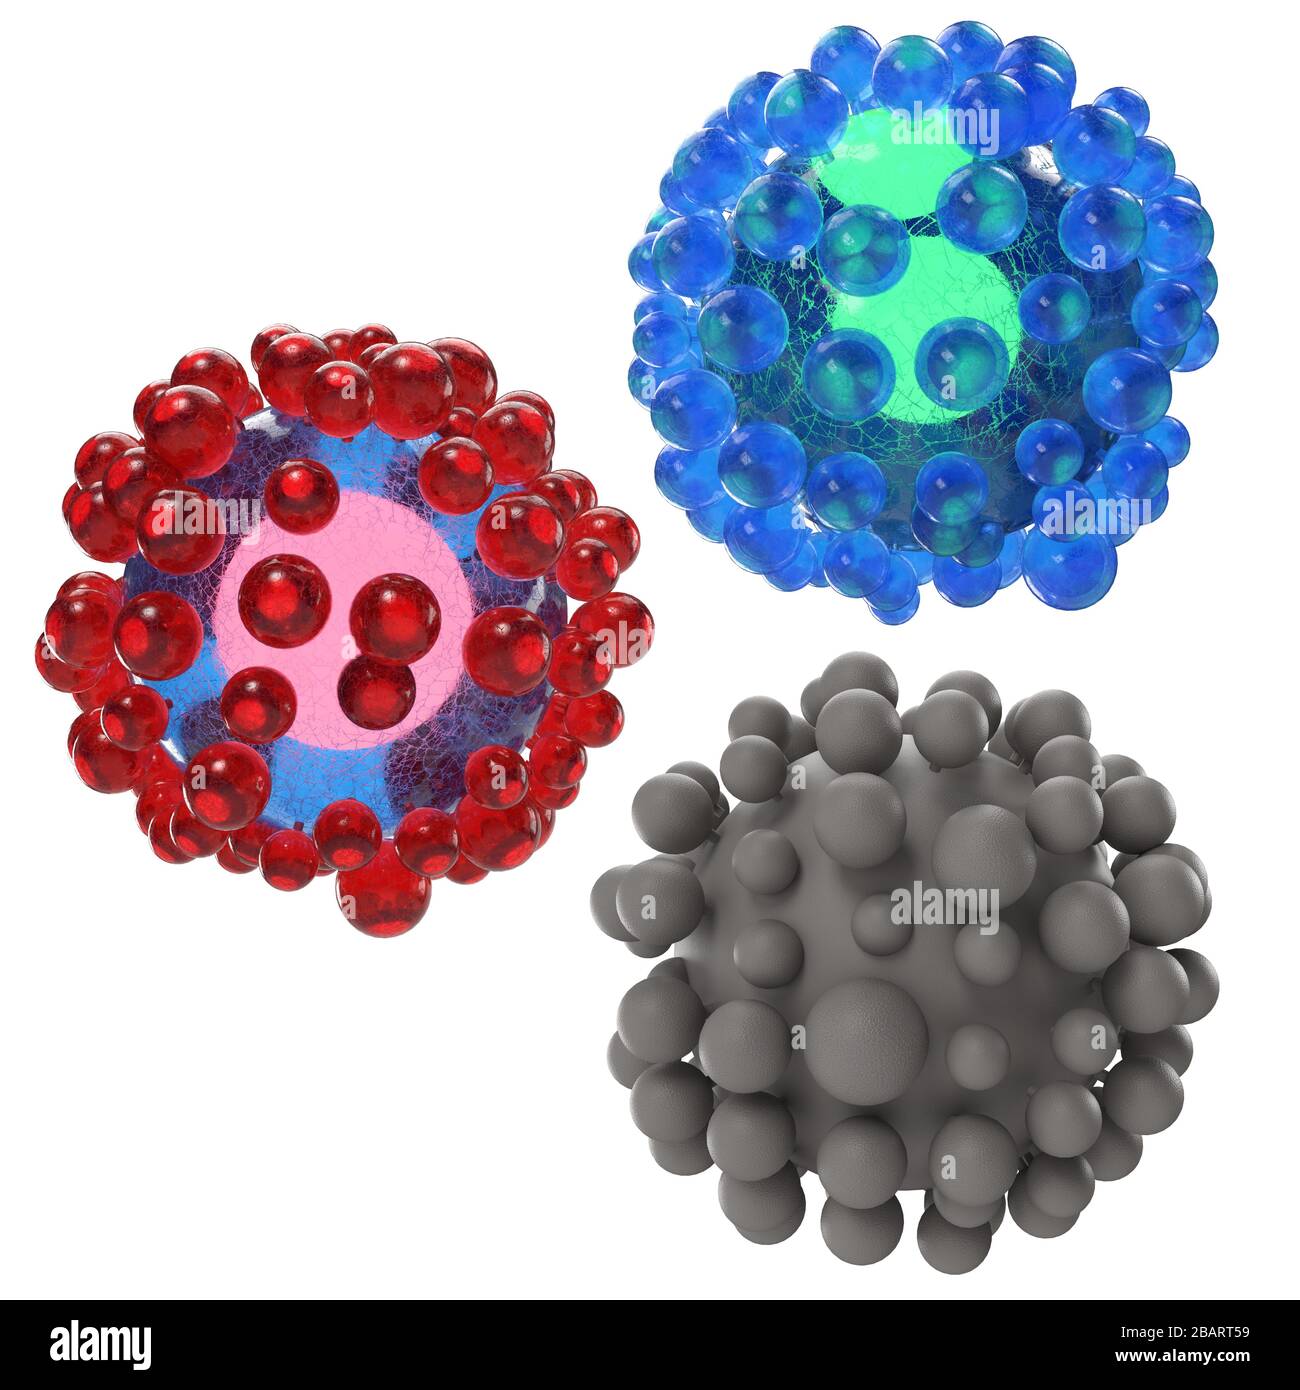 Abstract science 3d corona virus outbreak illustration Stock Photo